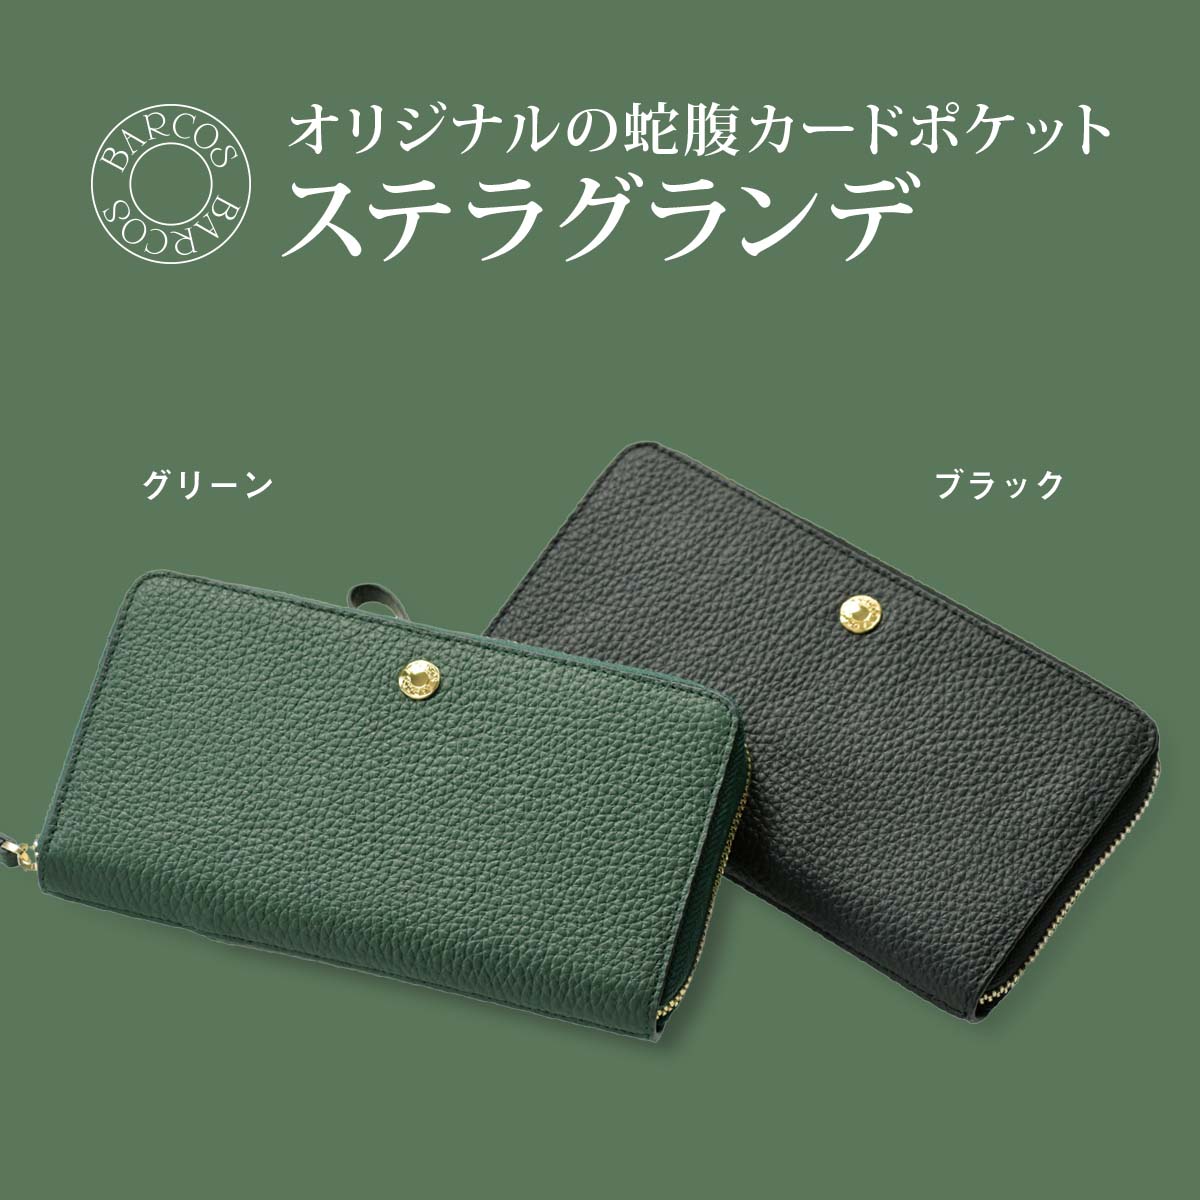 バルコス 緑の財布 島田秀平 コラボ GLウォレット ラウンド型財布